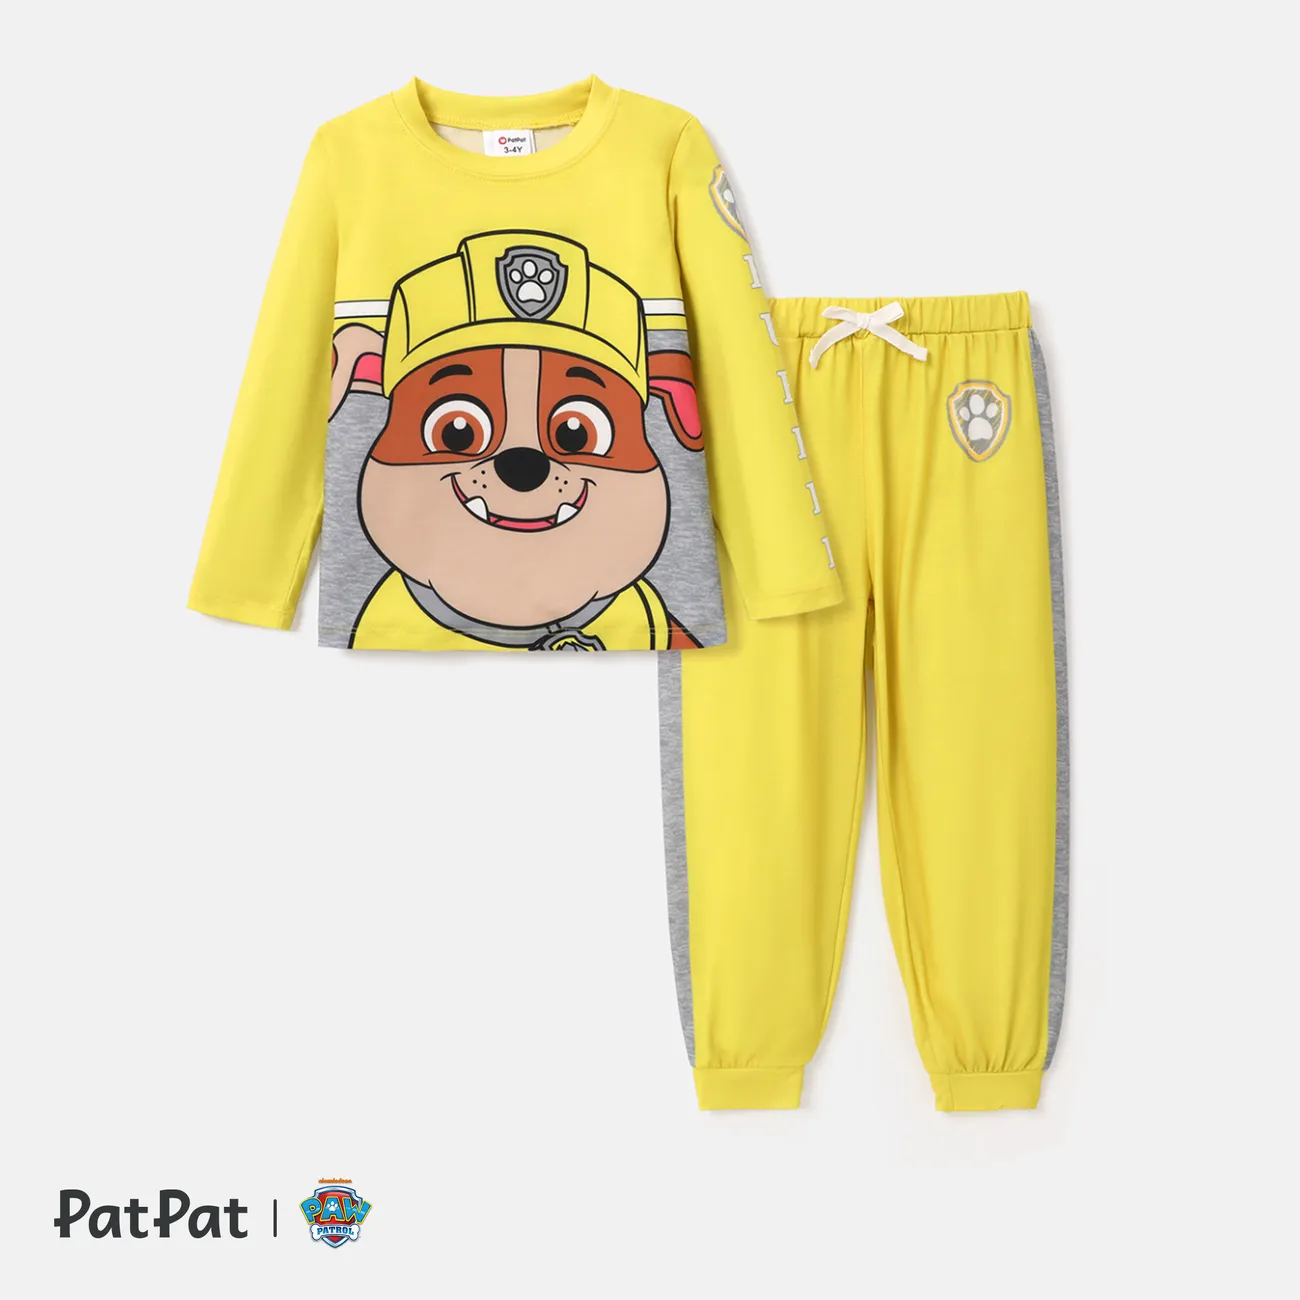 PAW Patrol Toddler Boy/Girl 2-Piece Cartoon Print Top and Pants Set Yellow big image 1